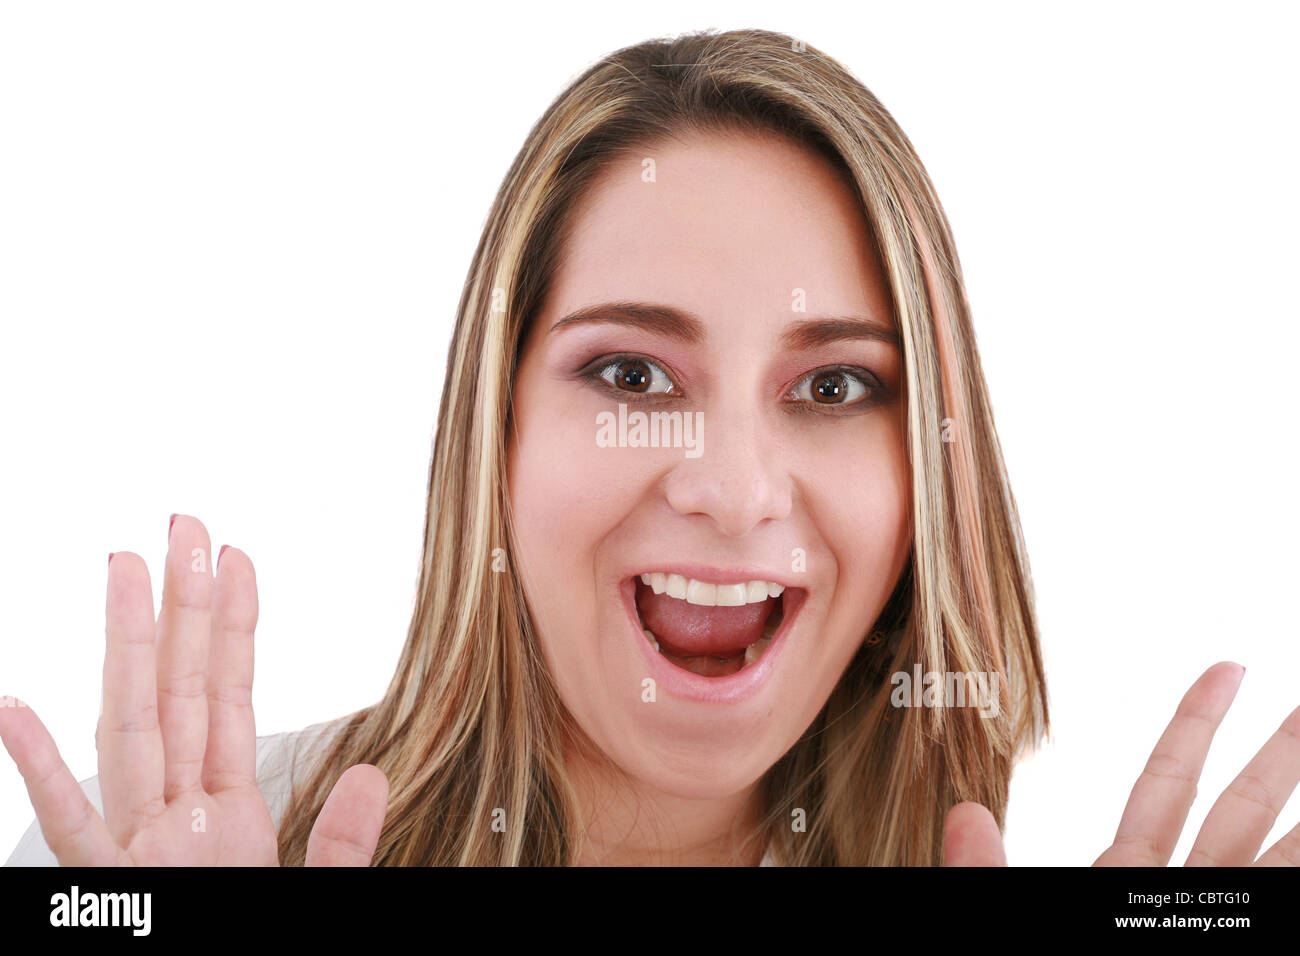 Porträt einer jungen Frau mit einem Ausdruck von Überraschung, isoliert auf weißem Hintergrund Stockfoto